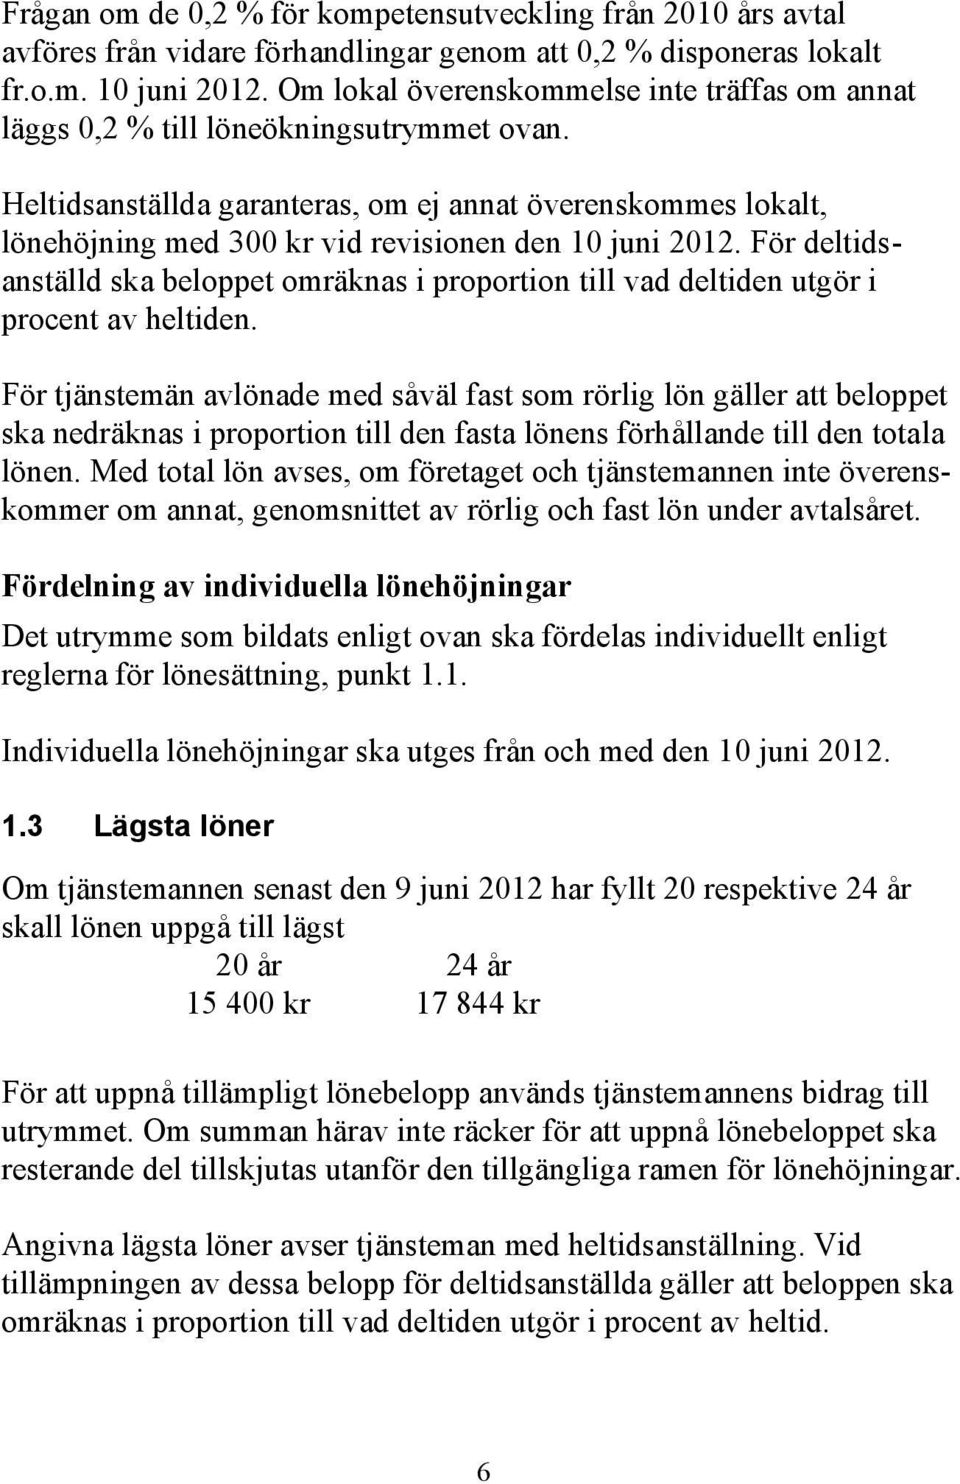 Heltidsanställda garanteras, om ej annat överenskommes lokalt, lönehöjning med 300 kr vid revisionen den 10 juni 2012.